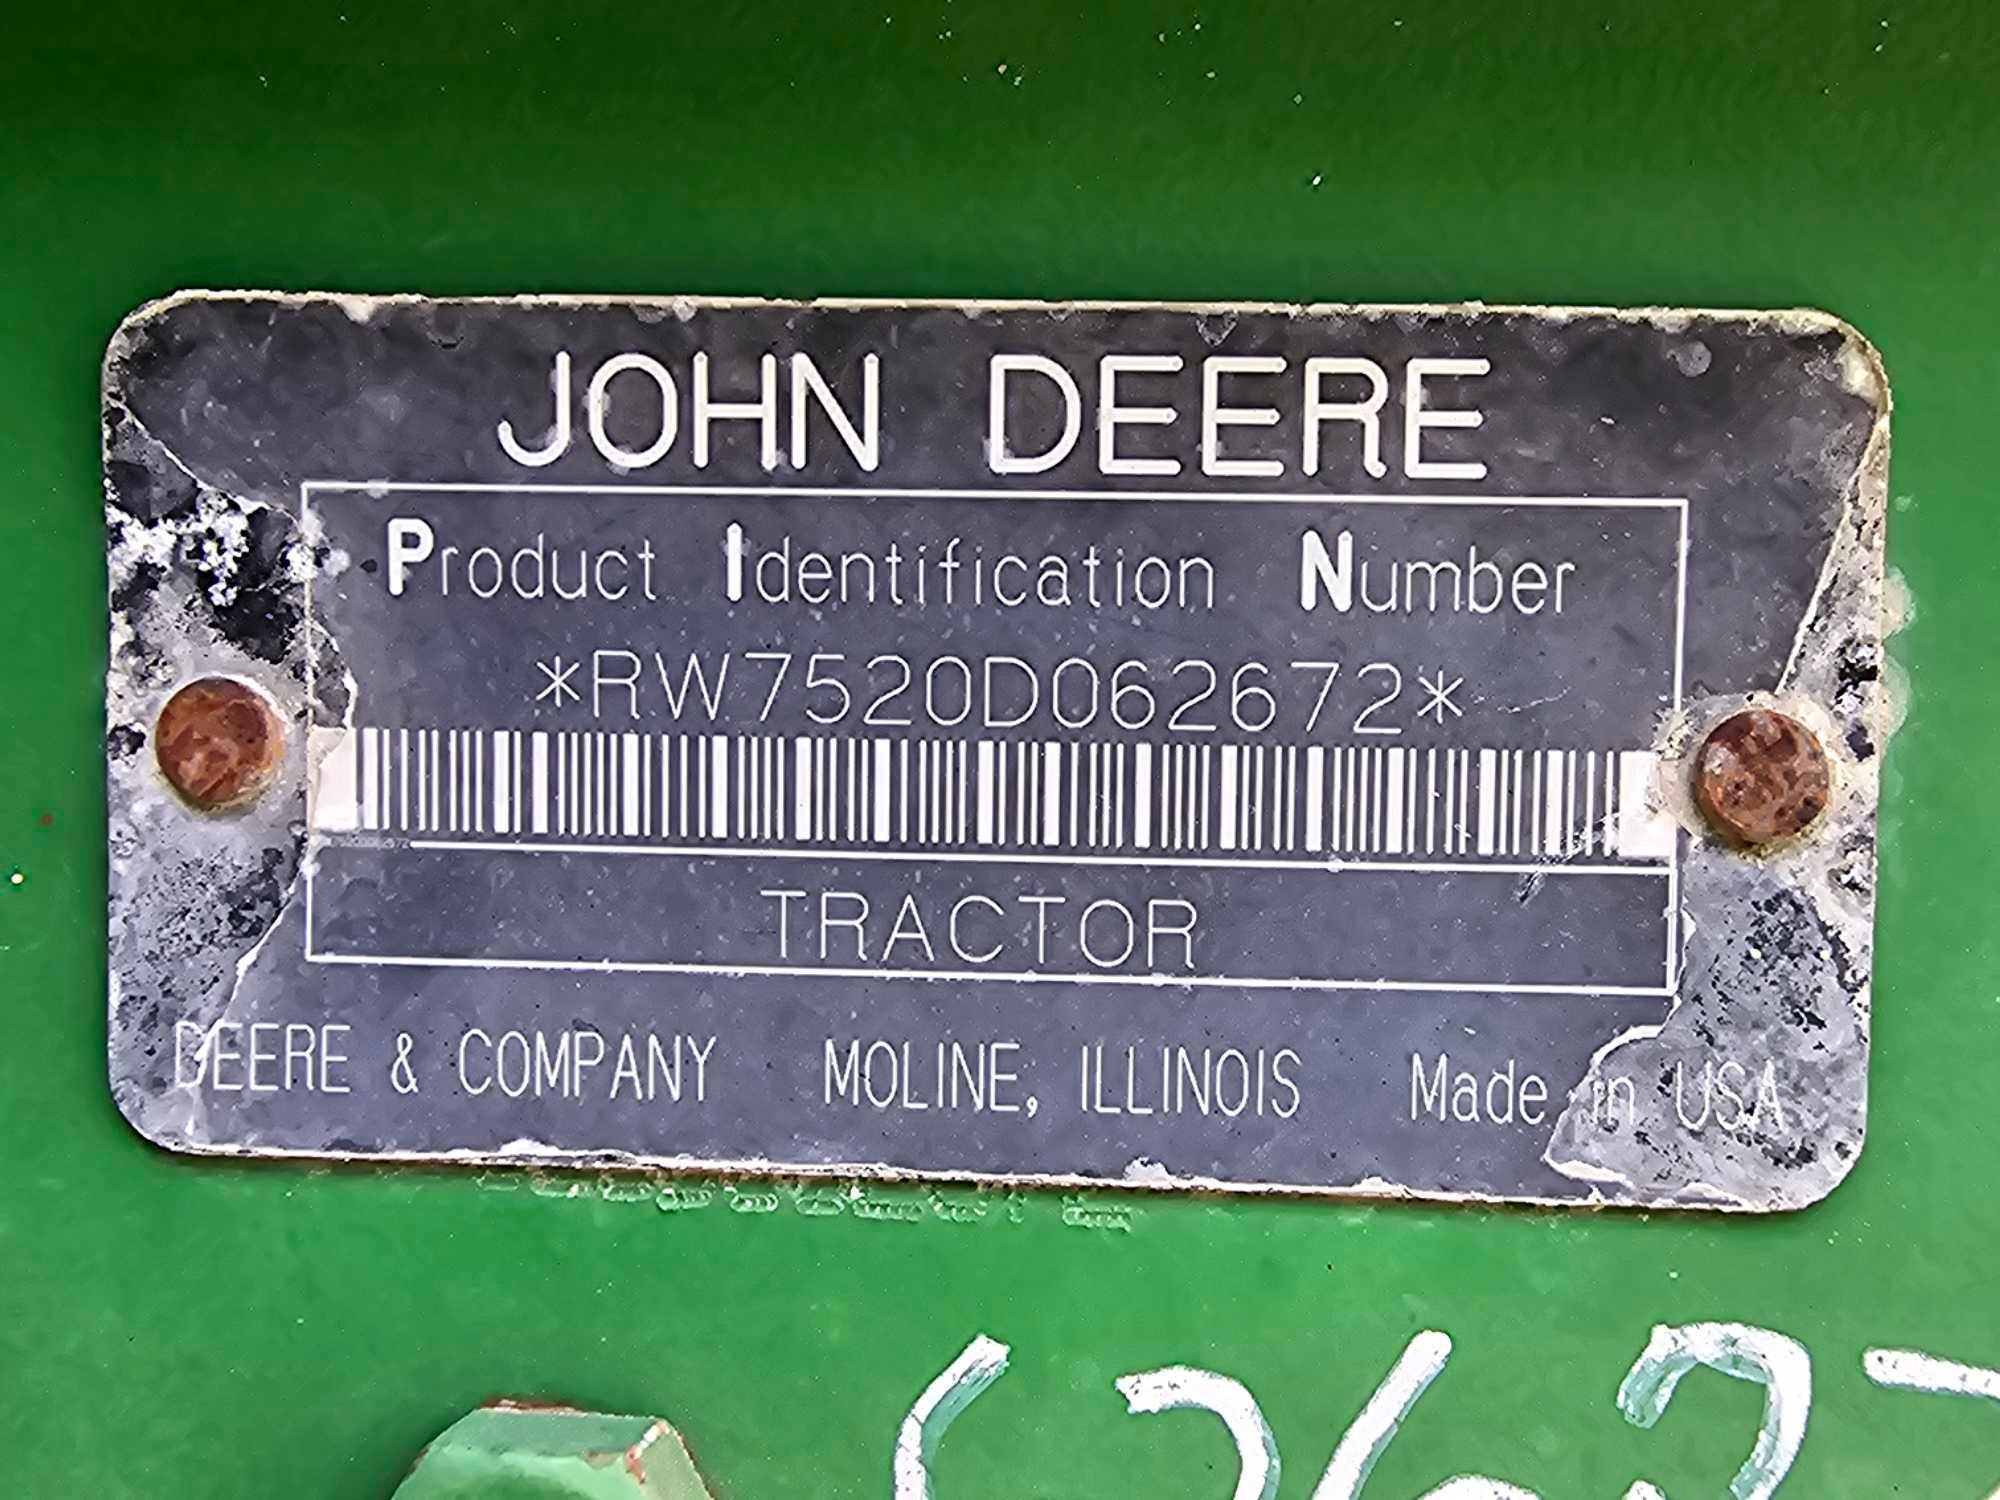 John Deere 7520 Farm Tractor